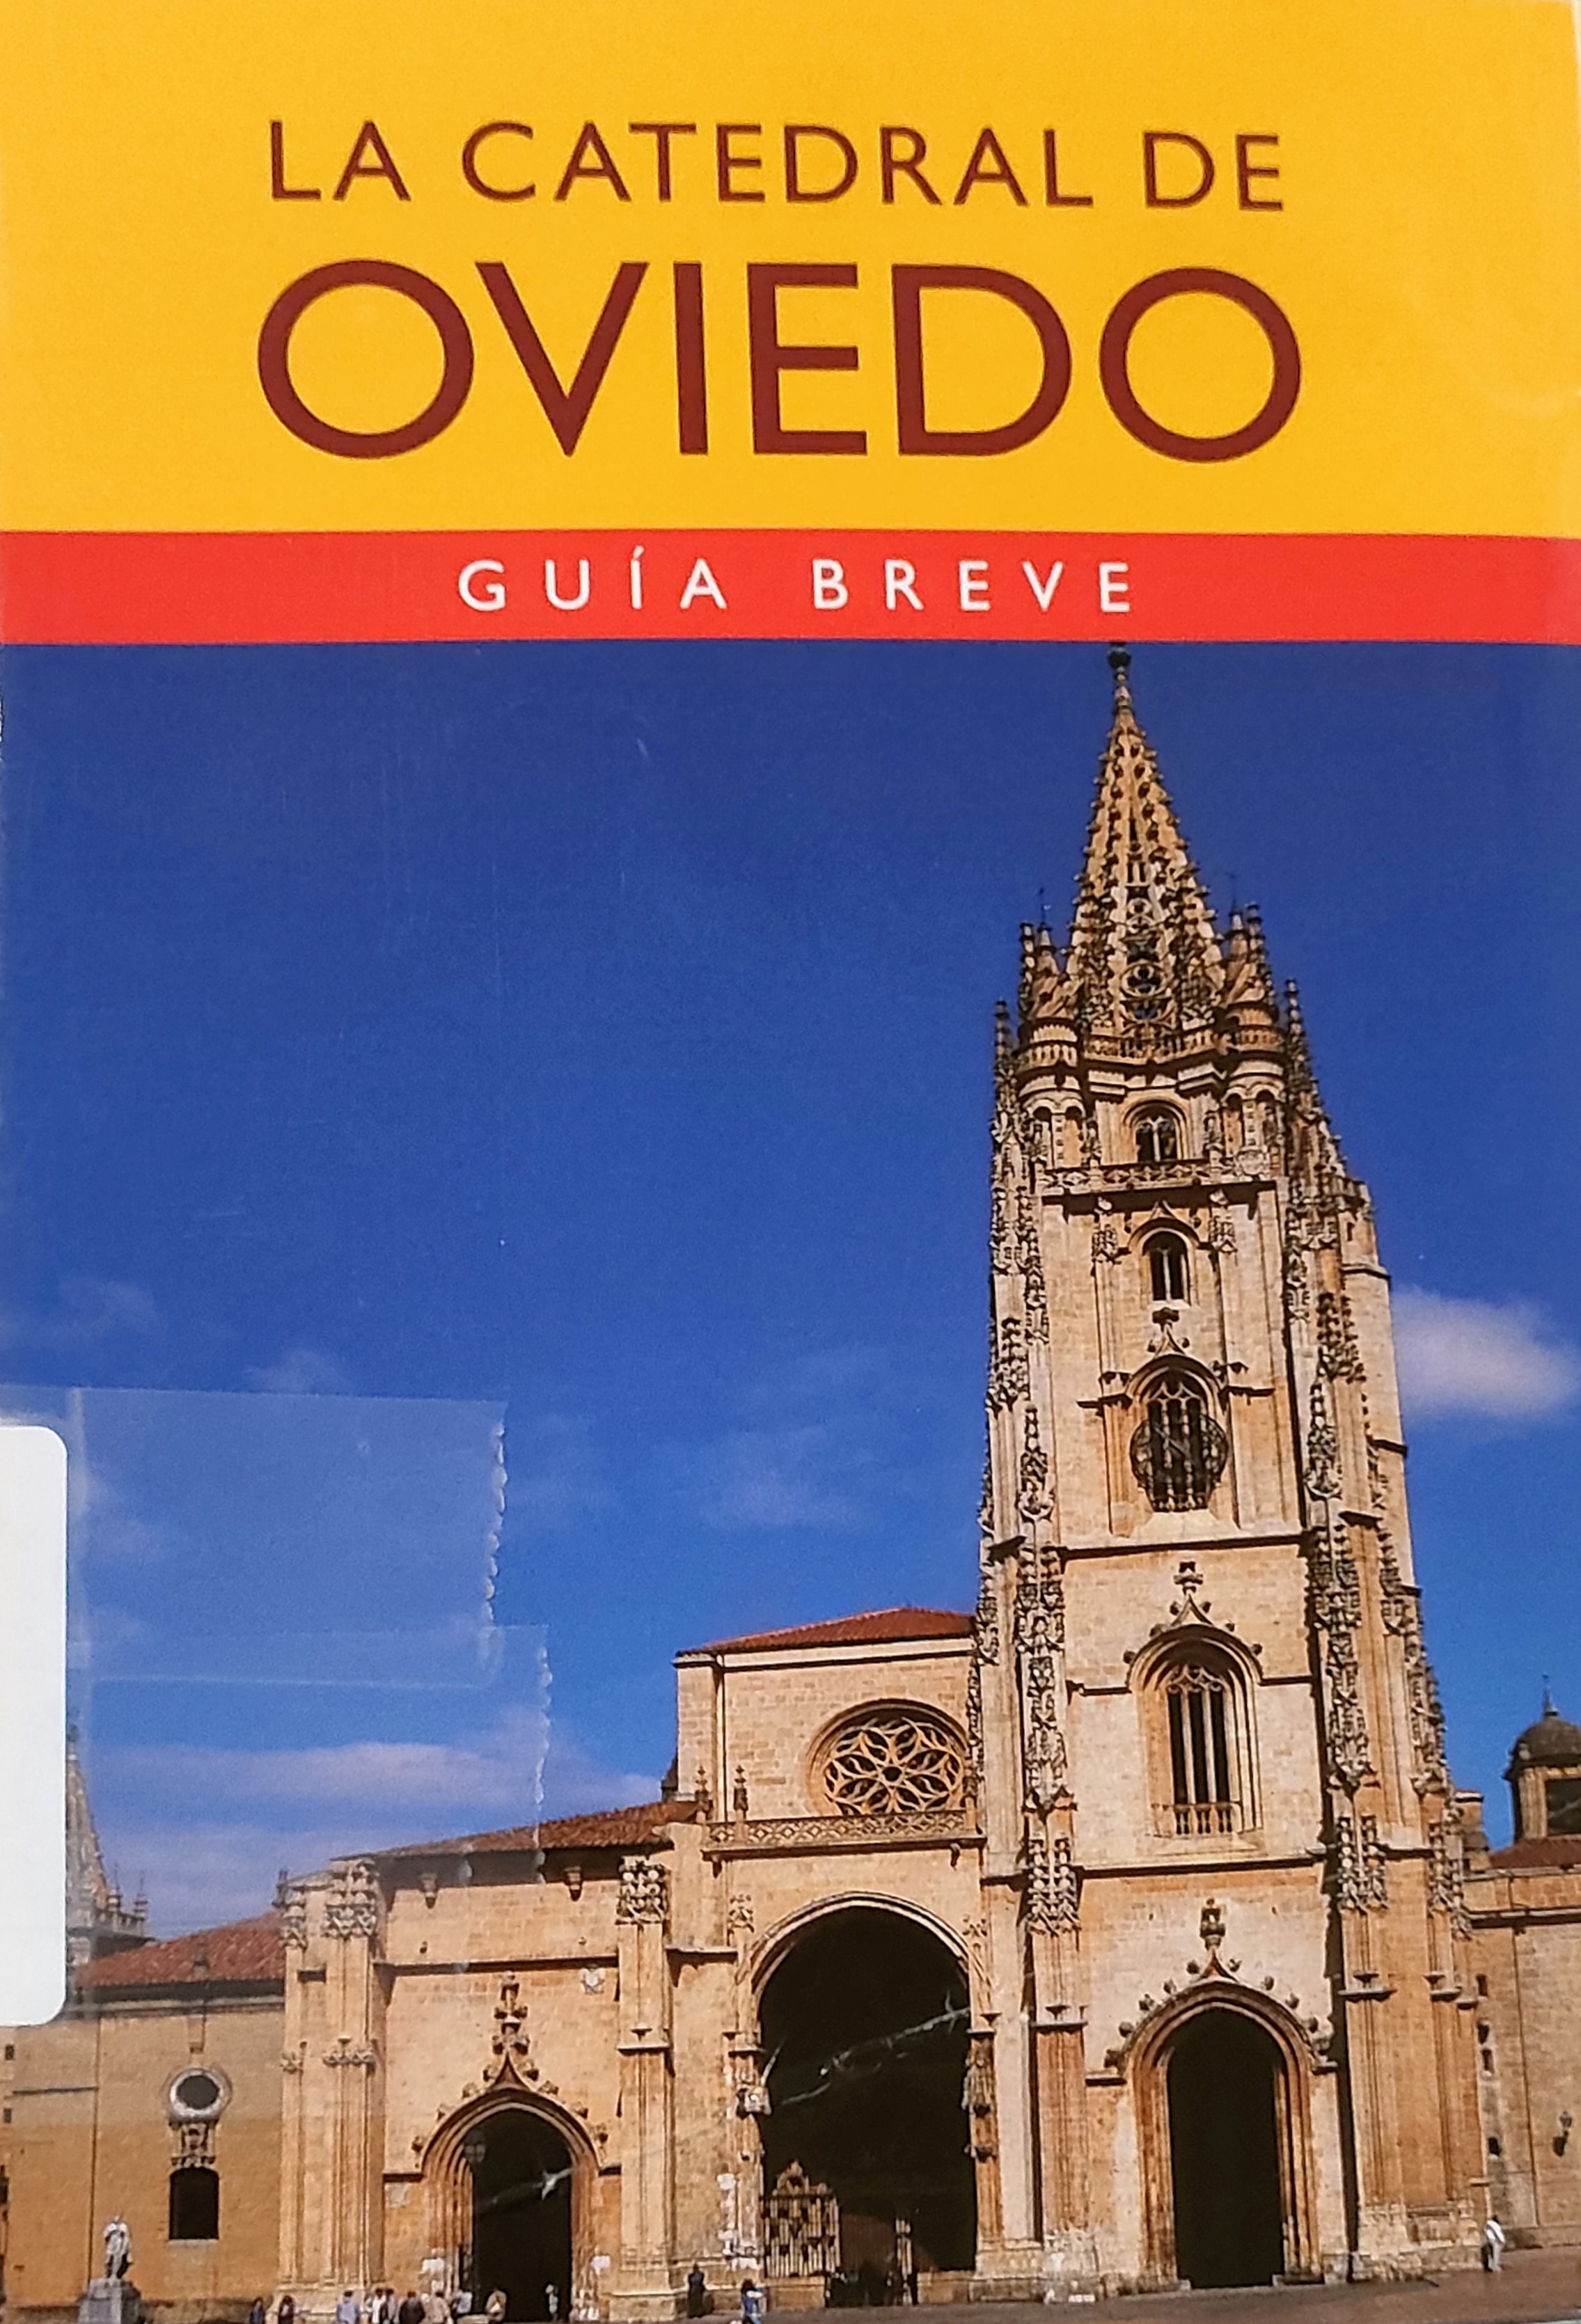 Imagen de portada del libro La catedral de Oviedo